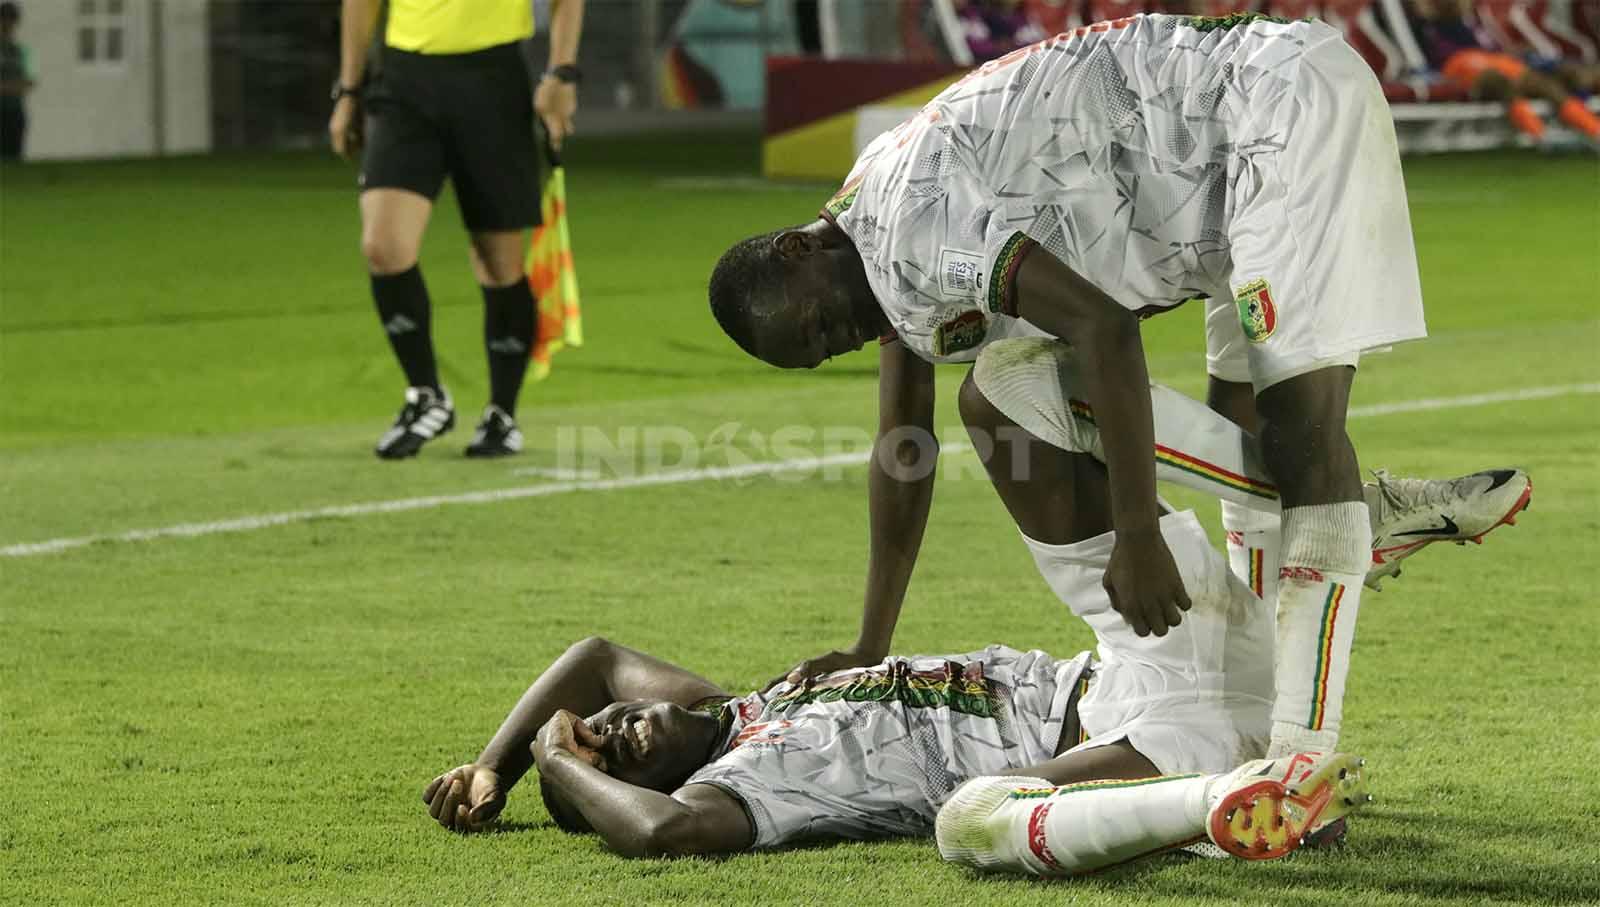 Selebrasi meluncur yang dilakukan penyerang Mali U-17, Mamadou Doumbia, gagal hingga dia mengerang kesakitan di bagian lututnya dalam pertandingan Piala Dunia U-17 2023 grup B melawan Uzbekistan U-17 di Stadion Manahan Solo, Jumat (10/11/23. Nofik Lukman Hakim/INDOSPORT